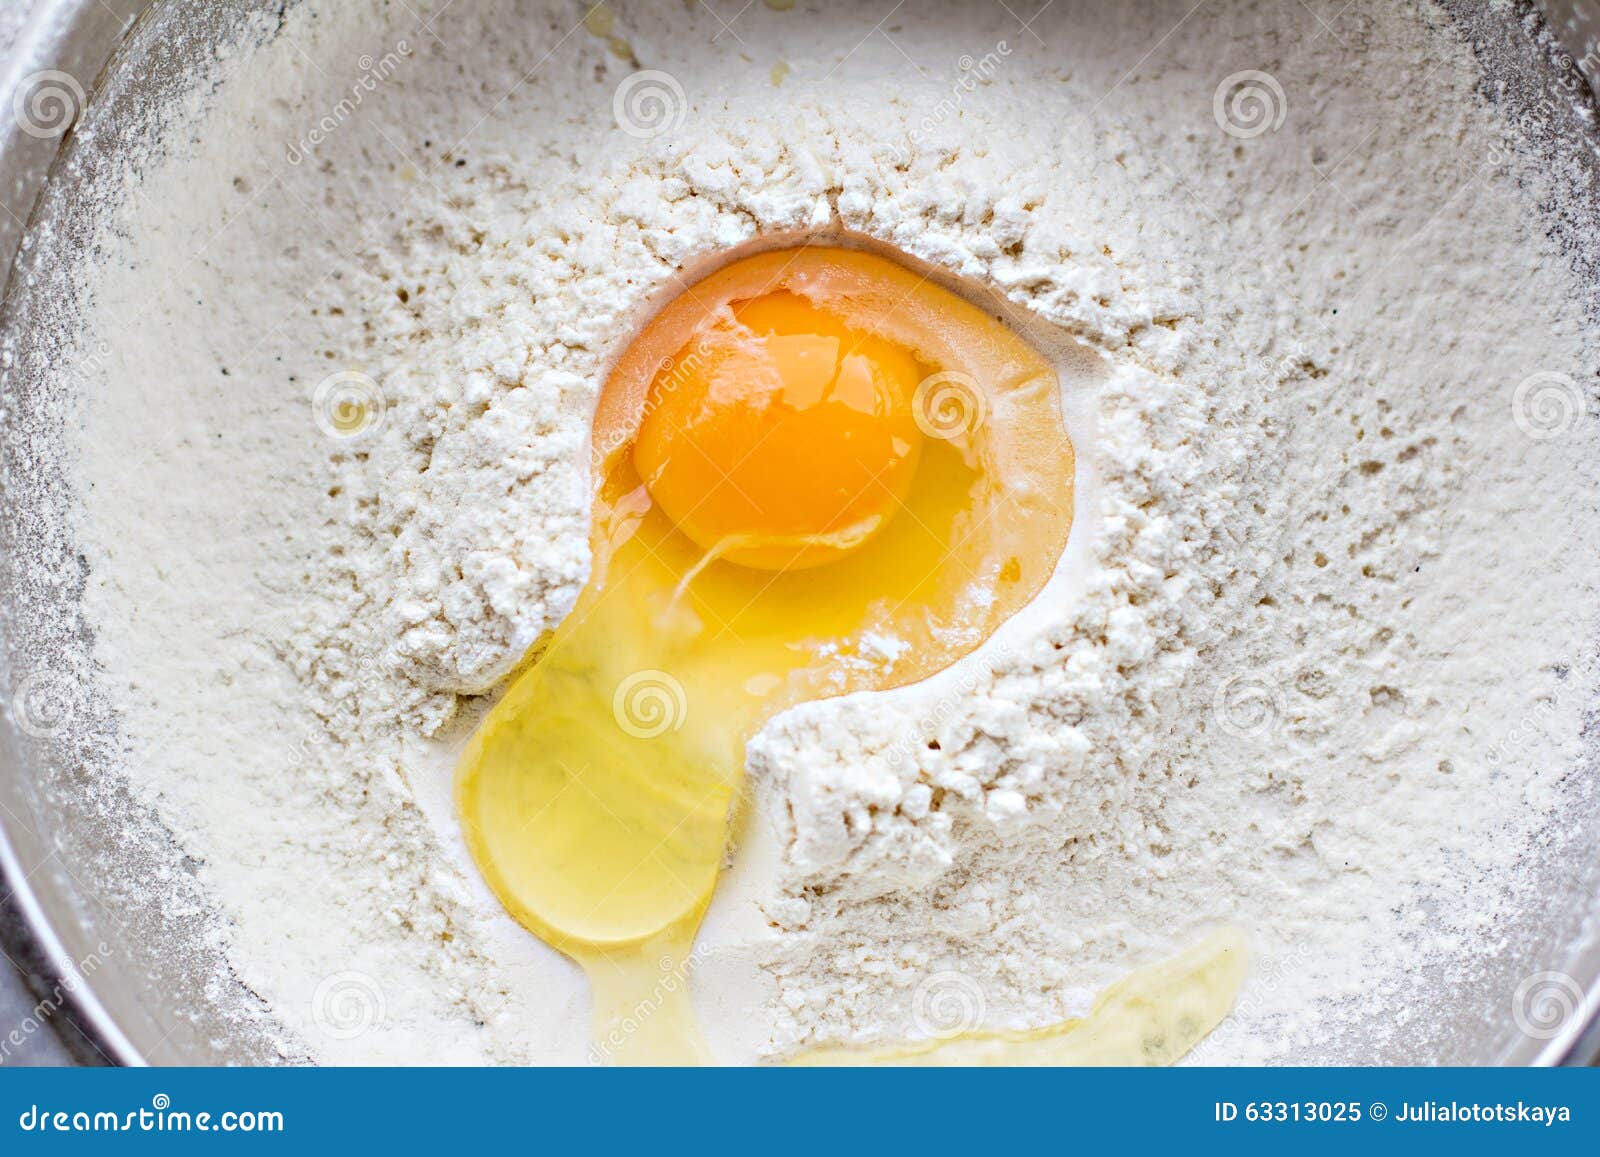 К чему снятся сырые яйца разбивать. Мука и яйца. Разбитое яйцо и мука. Желток в муке. Яйцо разбитое в муку вид сверху.